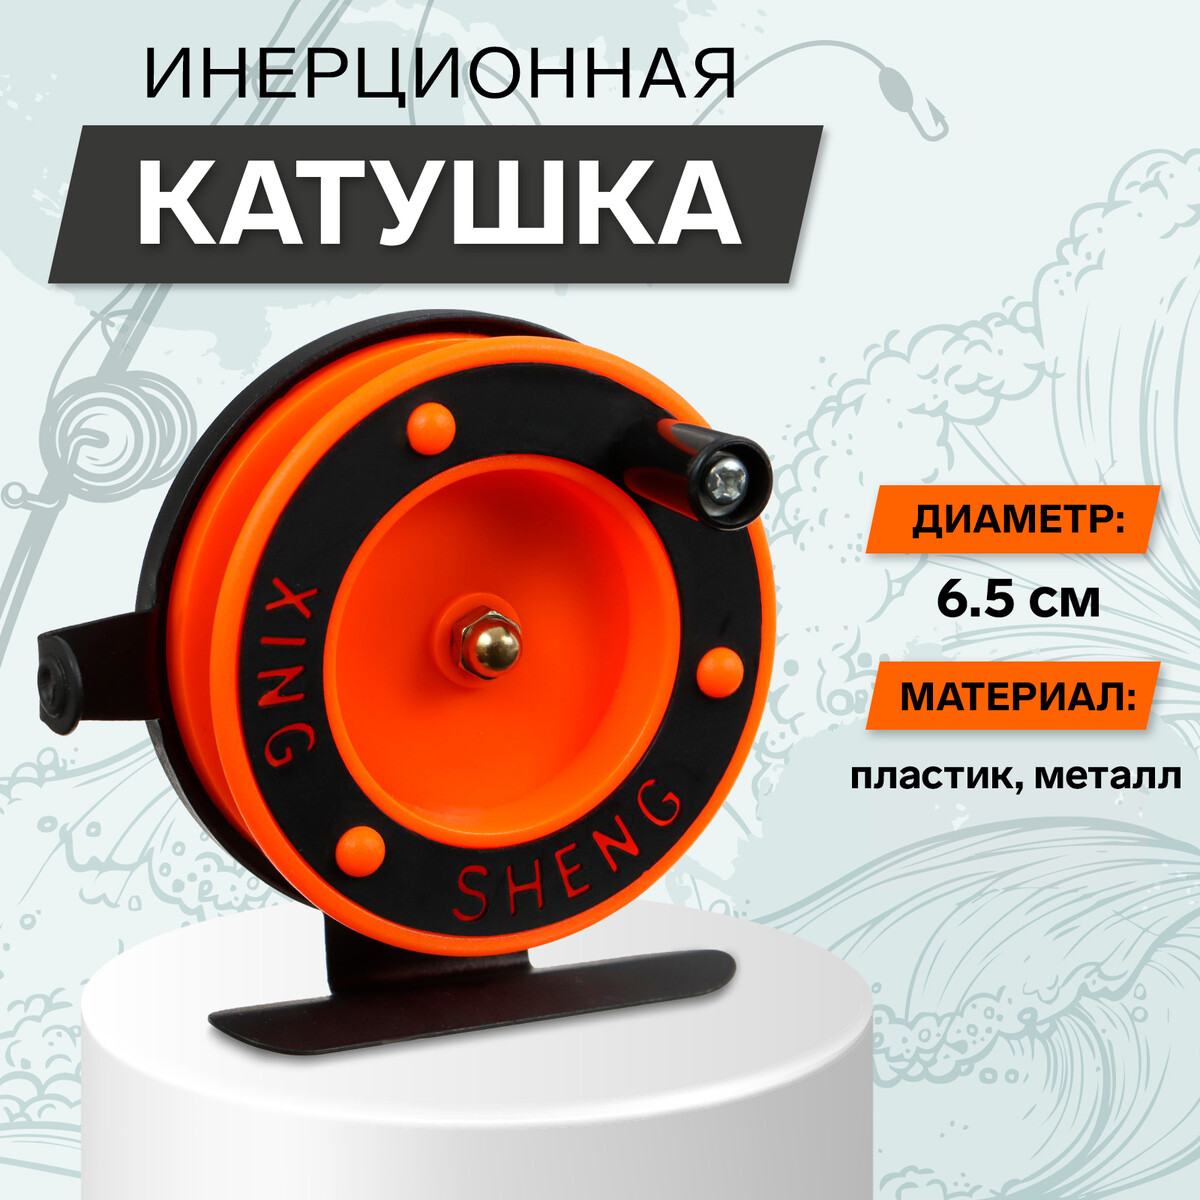 Катушка инерционная, металл пластик, диаметр 6.5 см, направляющая, черно-оранжевый, 701d